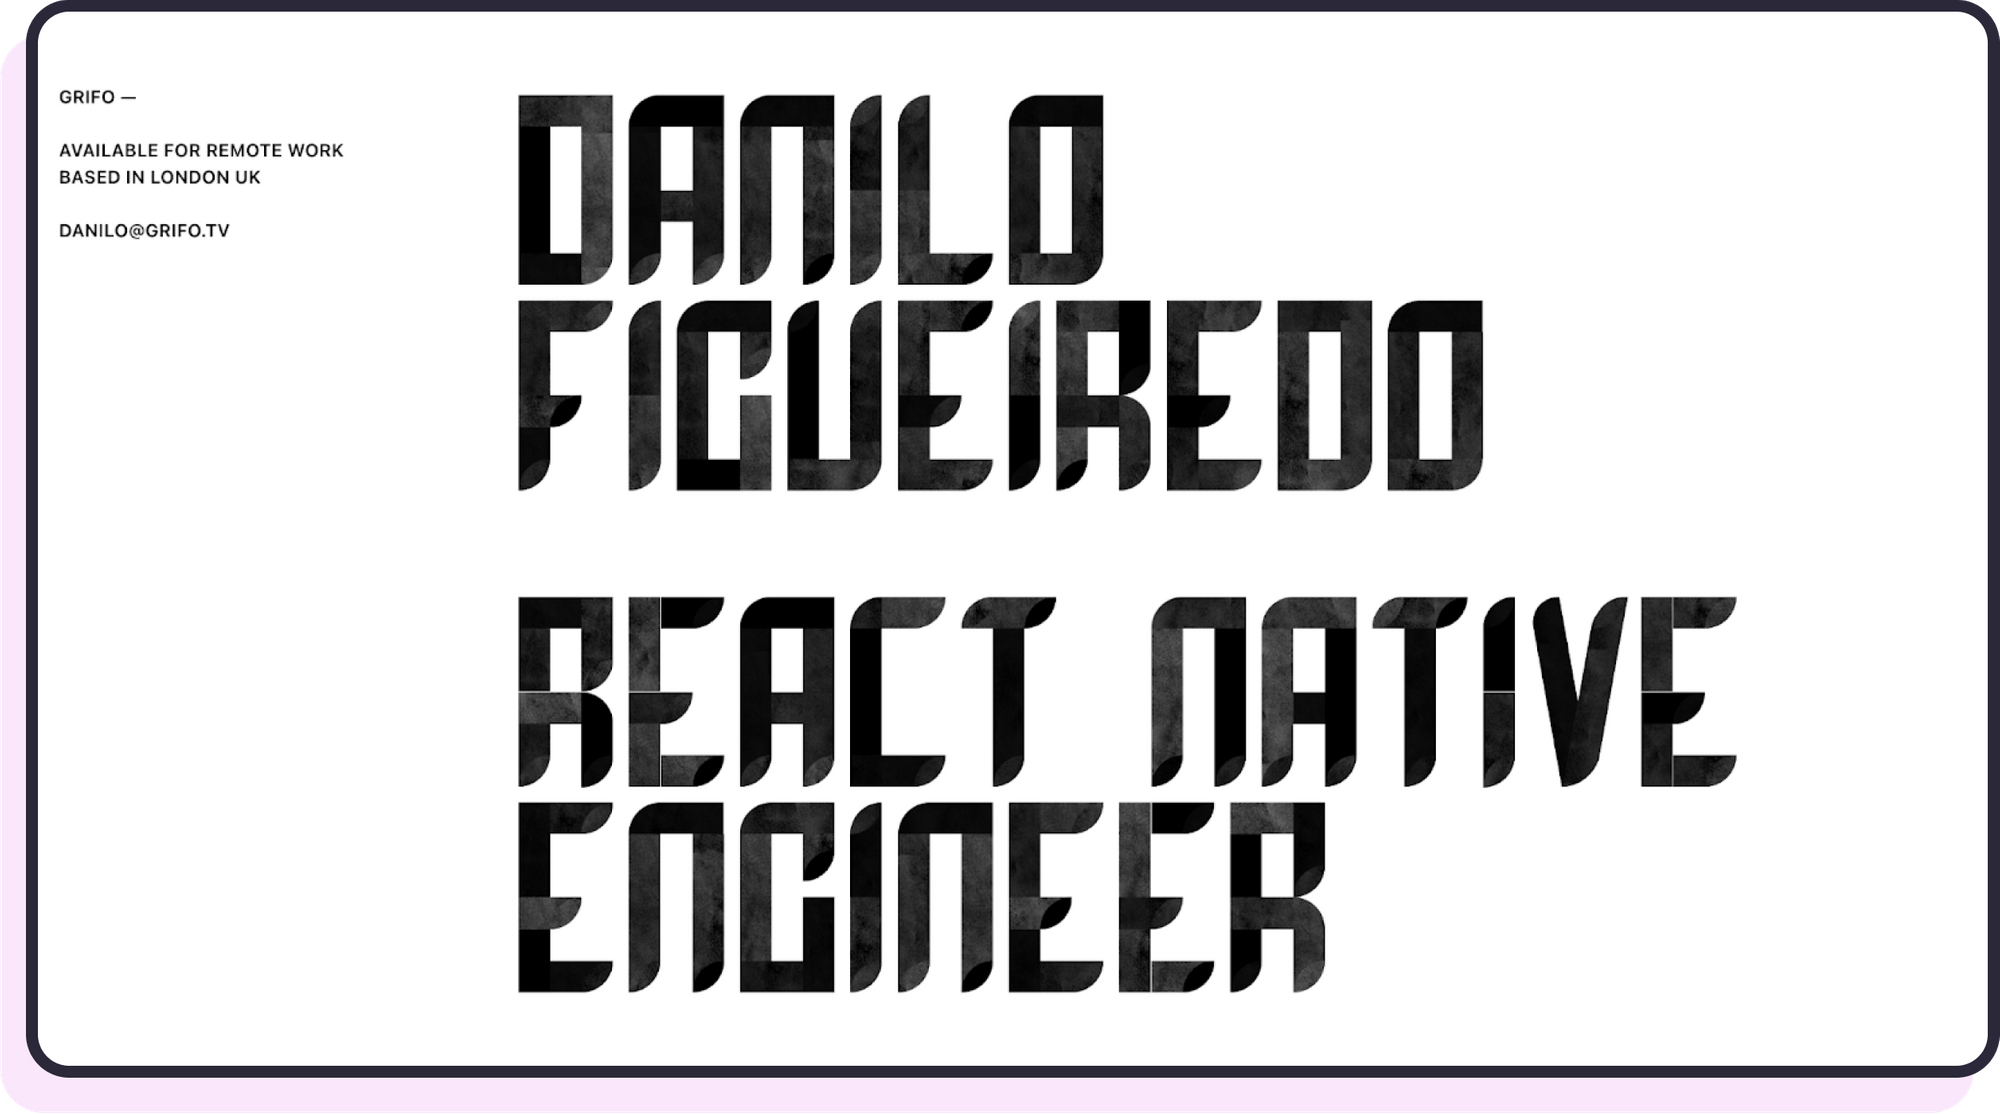 Danilo's portfolio homepage